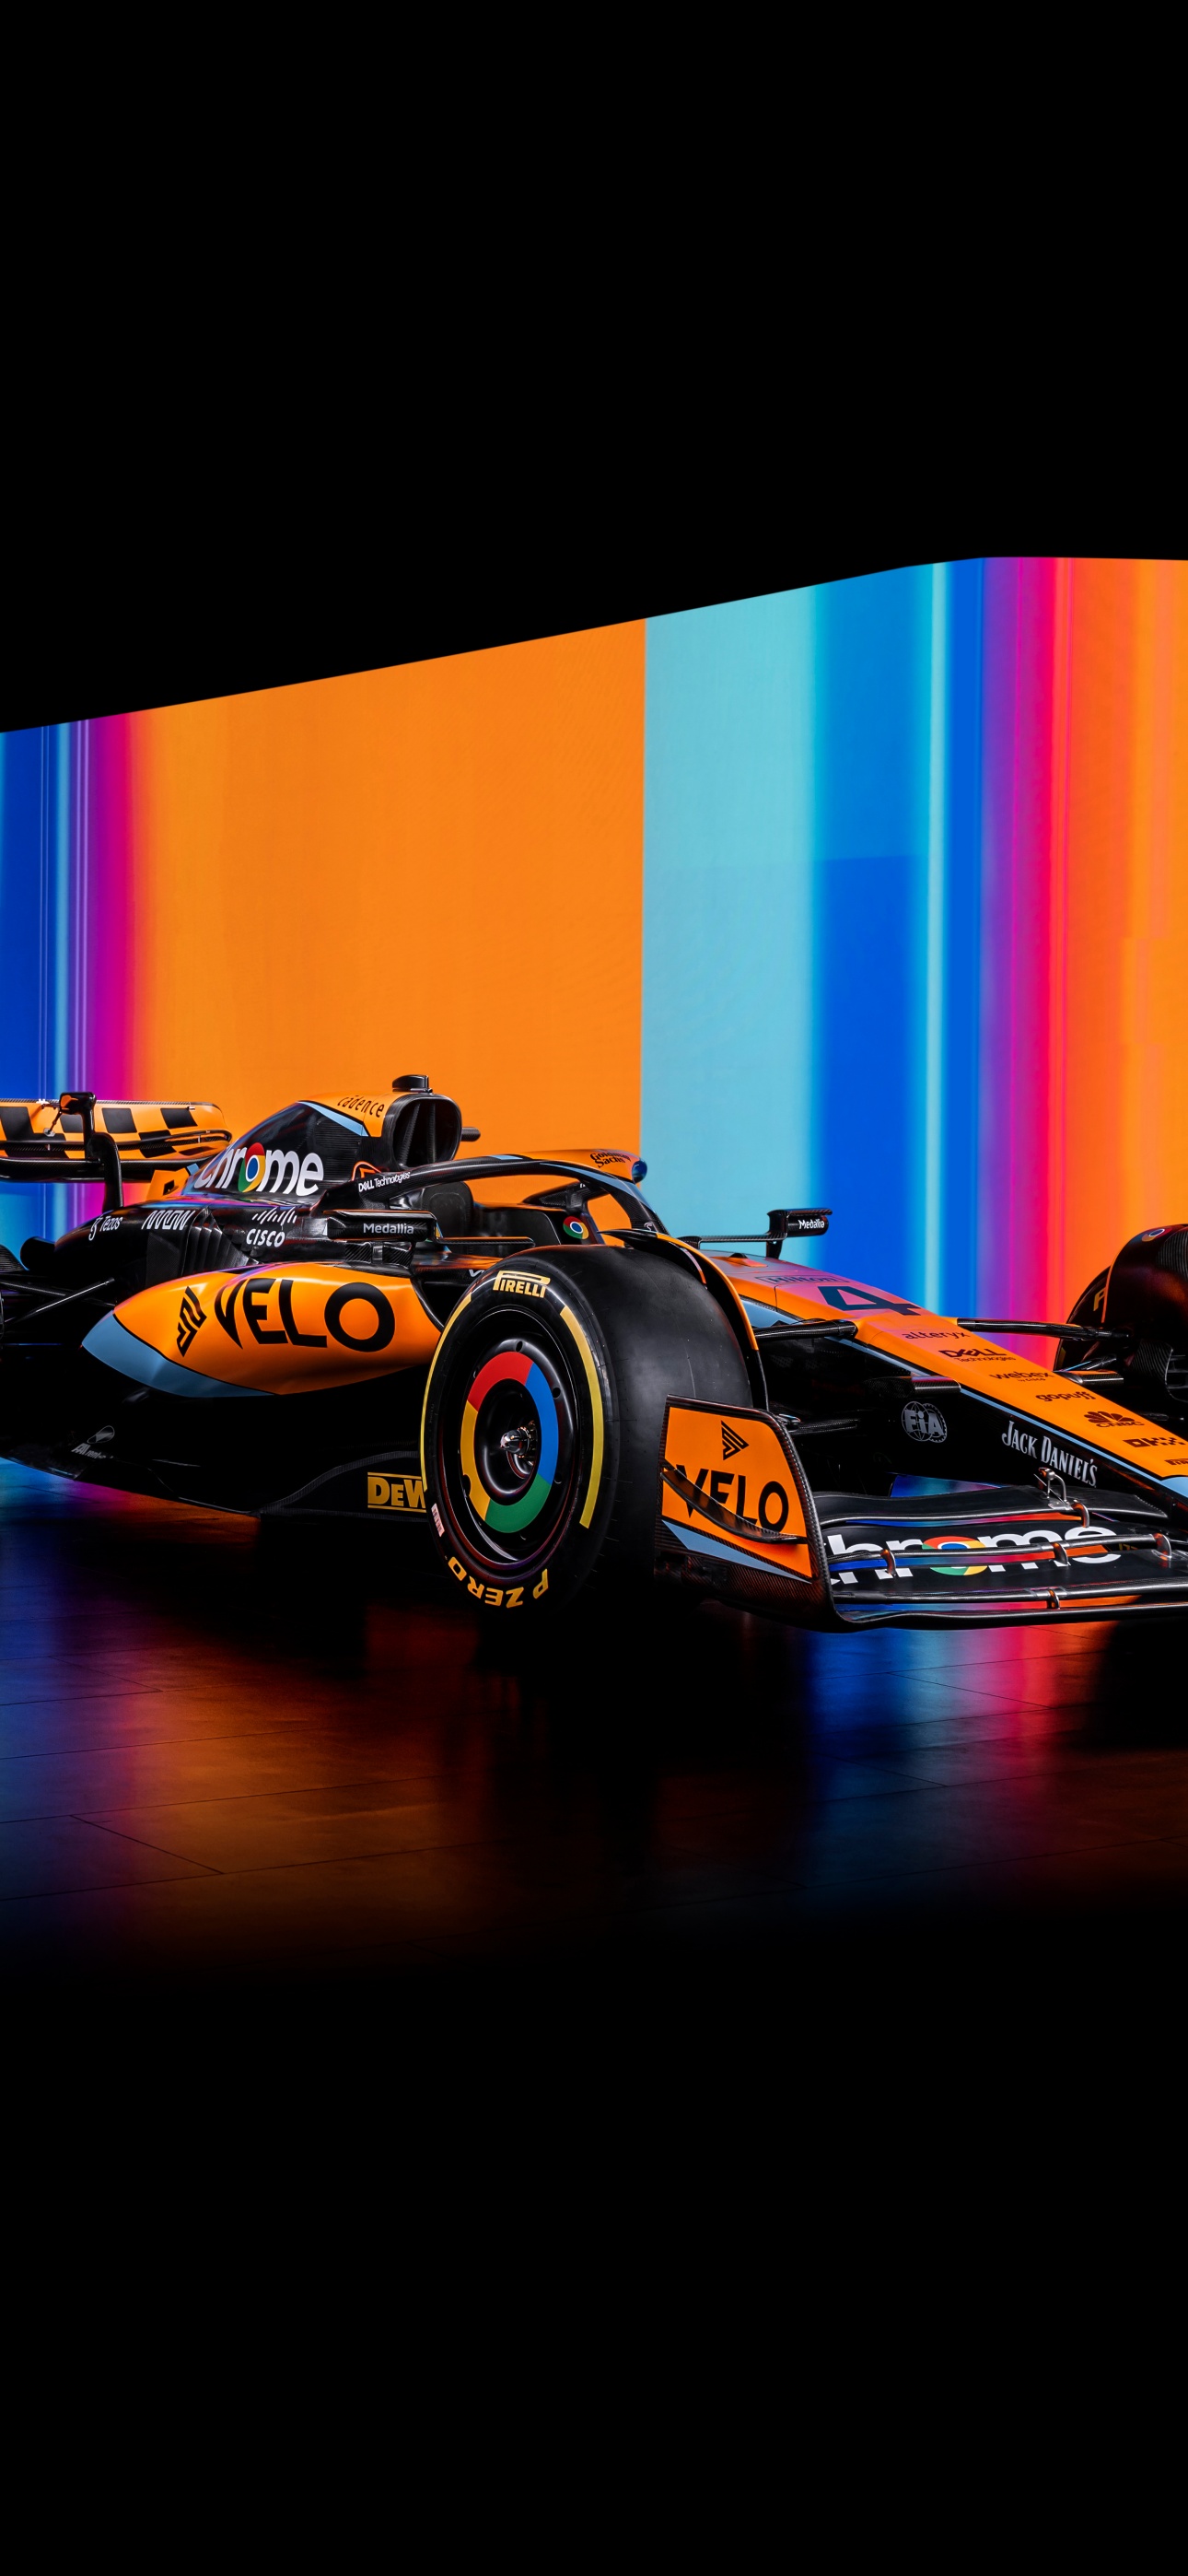 33+] McLaren F1 Phone Wallpapers - WallpaperSafari